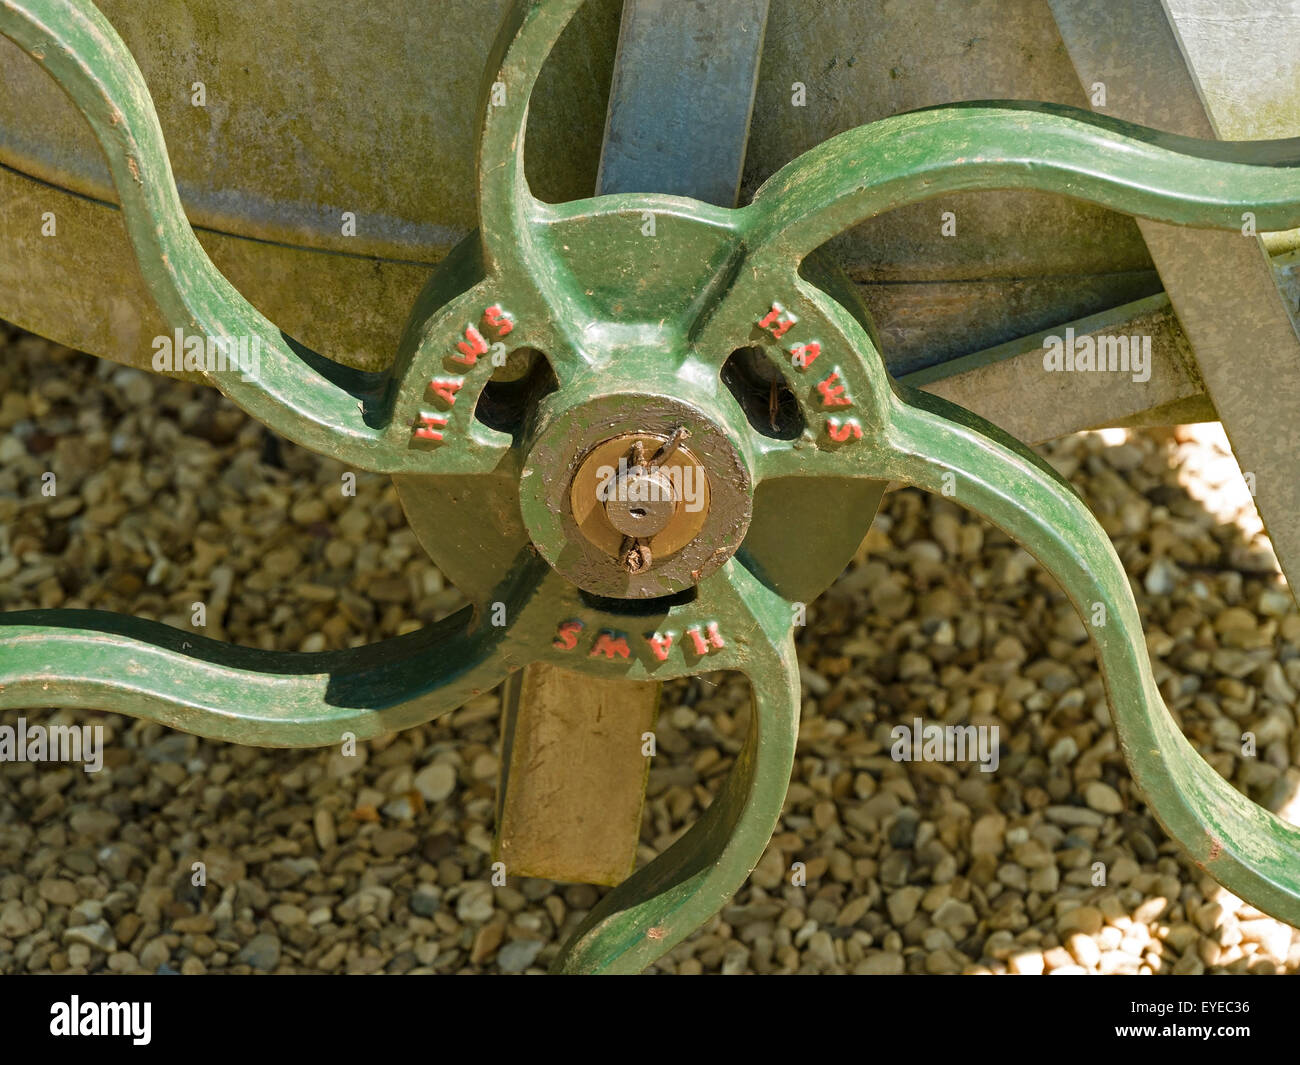 Radios de metal fundido ornamentado y el cubo de rueda en el jardín agua bowser. UK Foto de stock